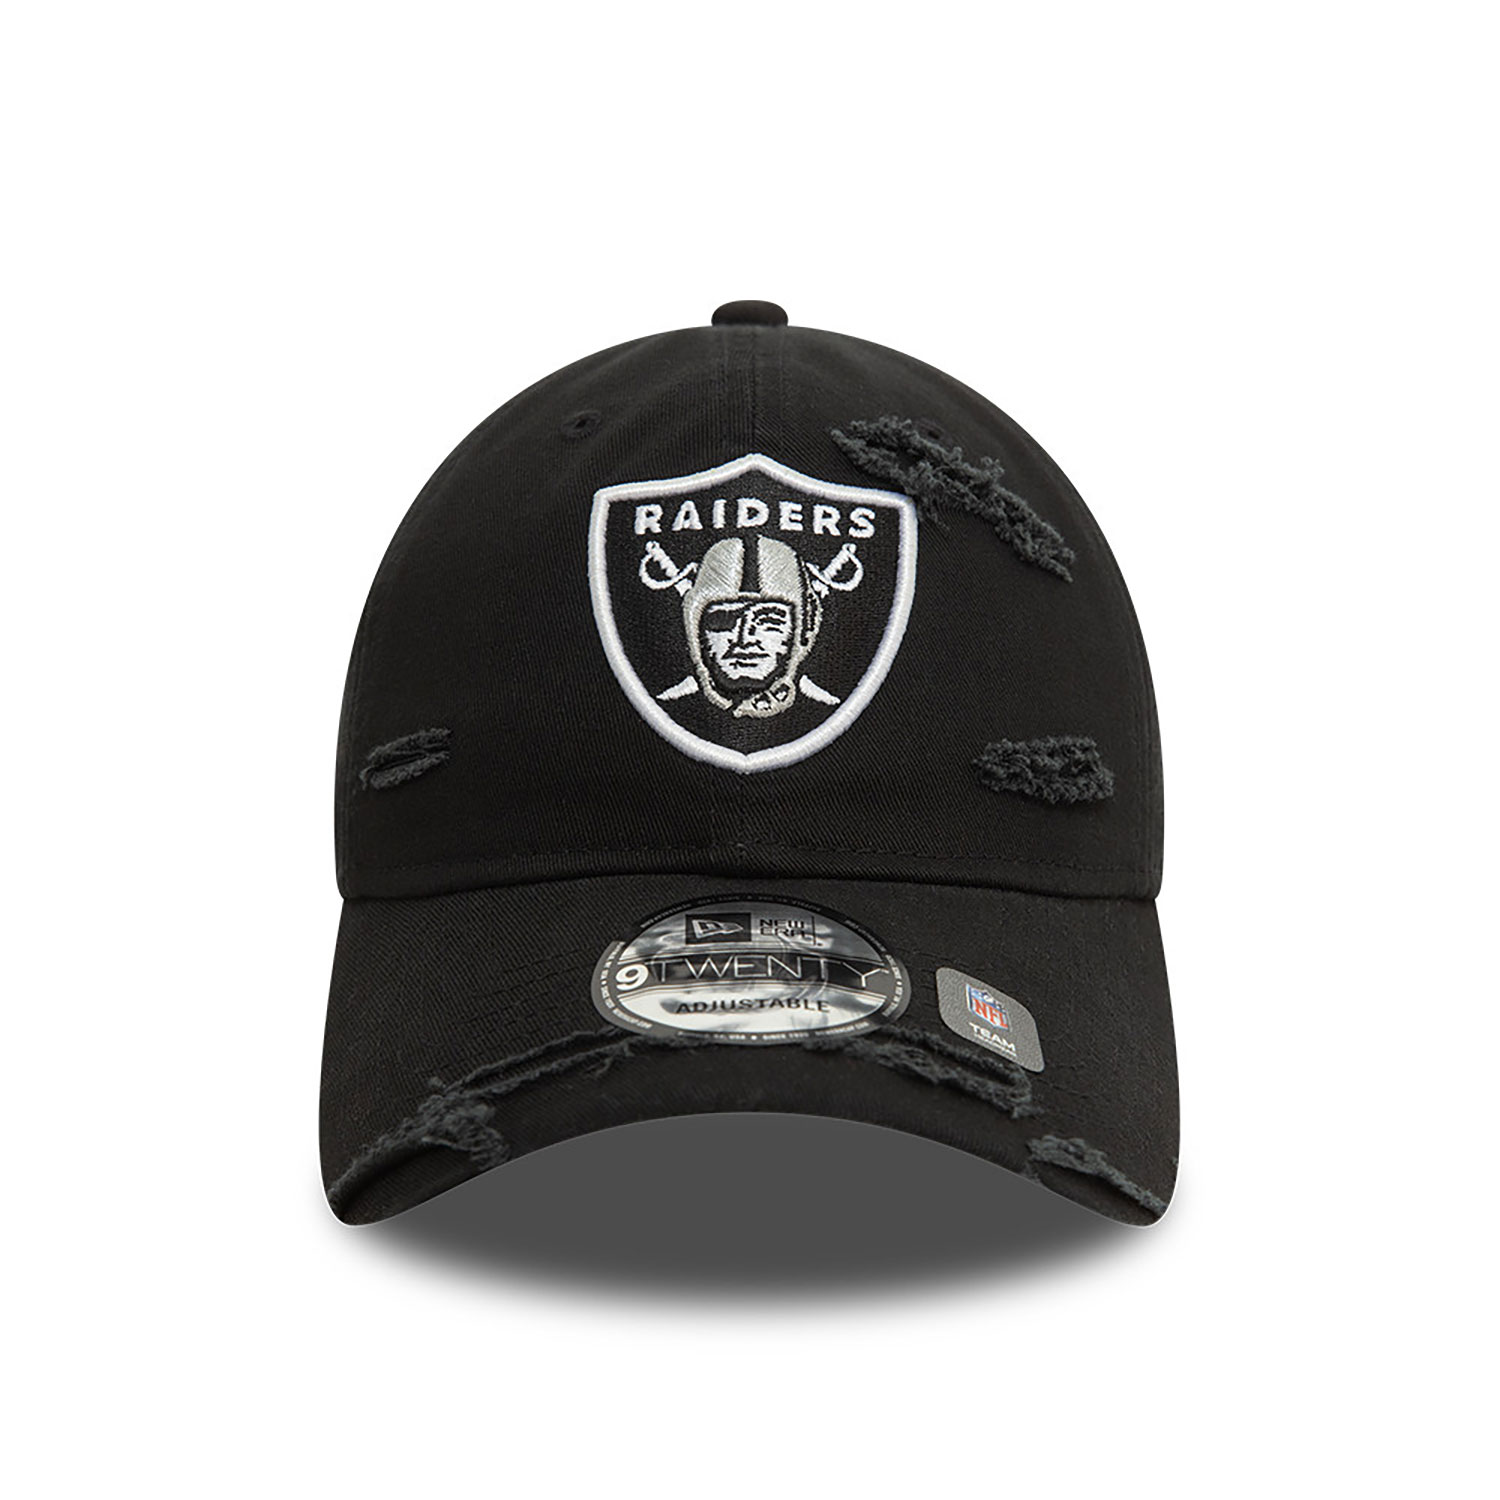 Las Vegas Raiders NFL Distressed Black 9TWENTY Adjustable Cap